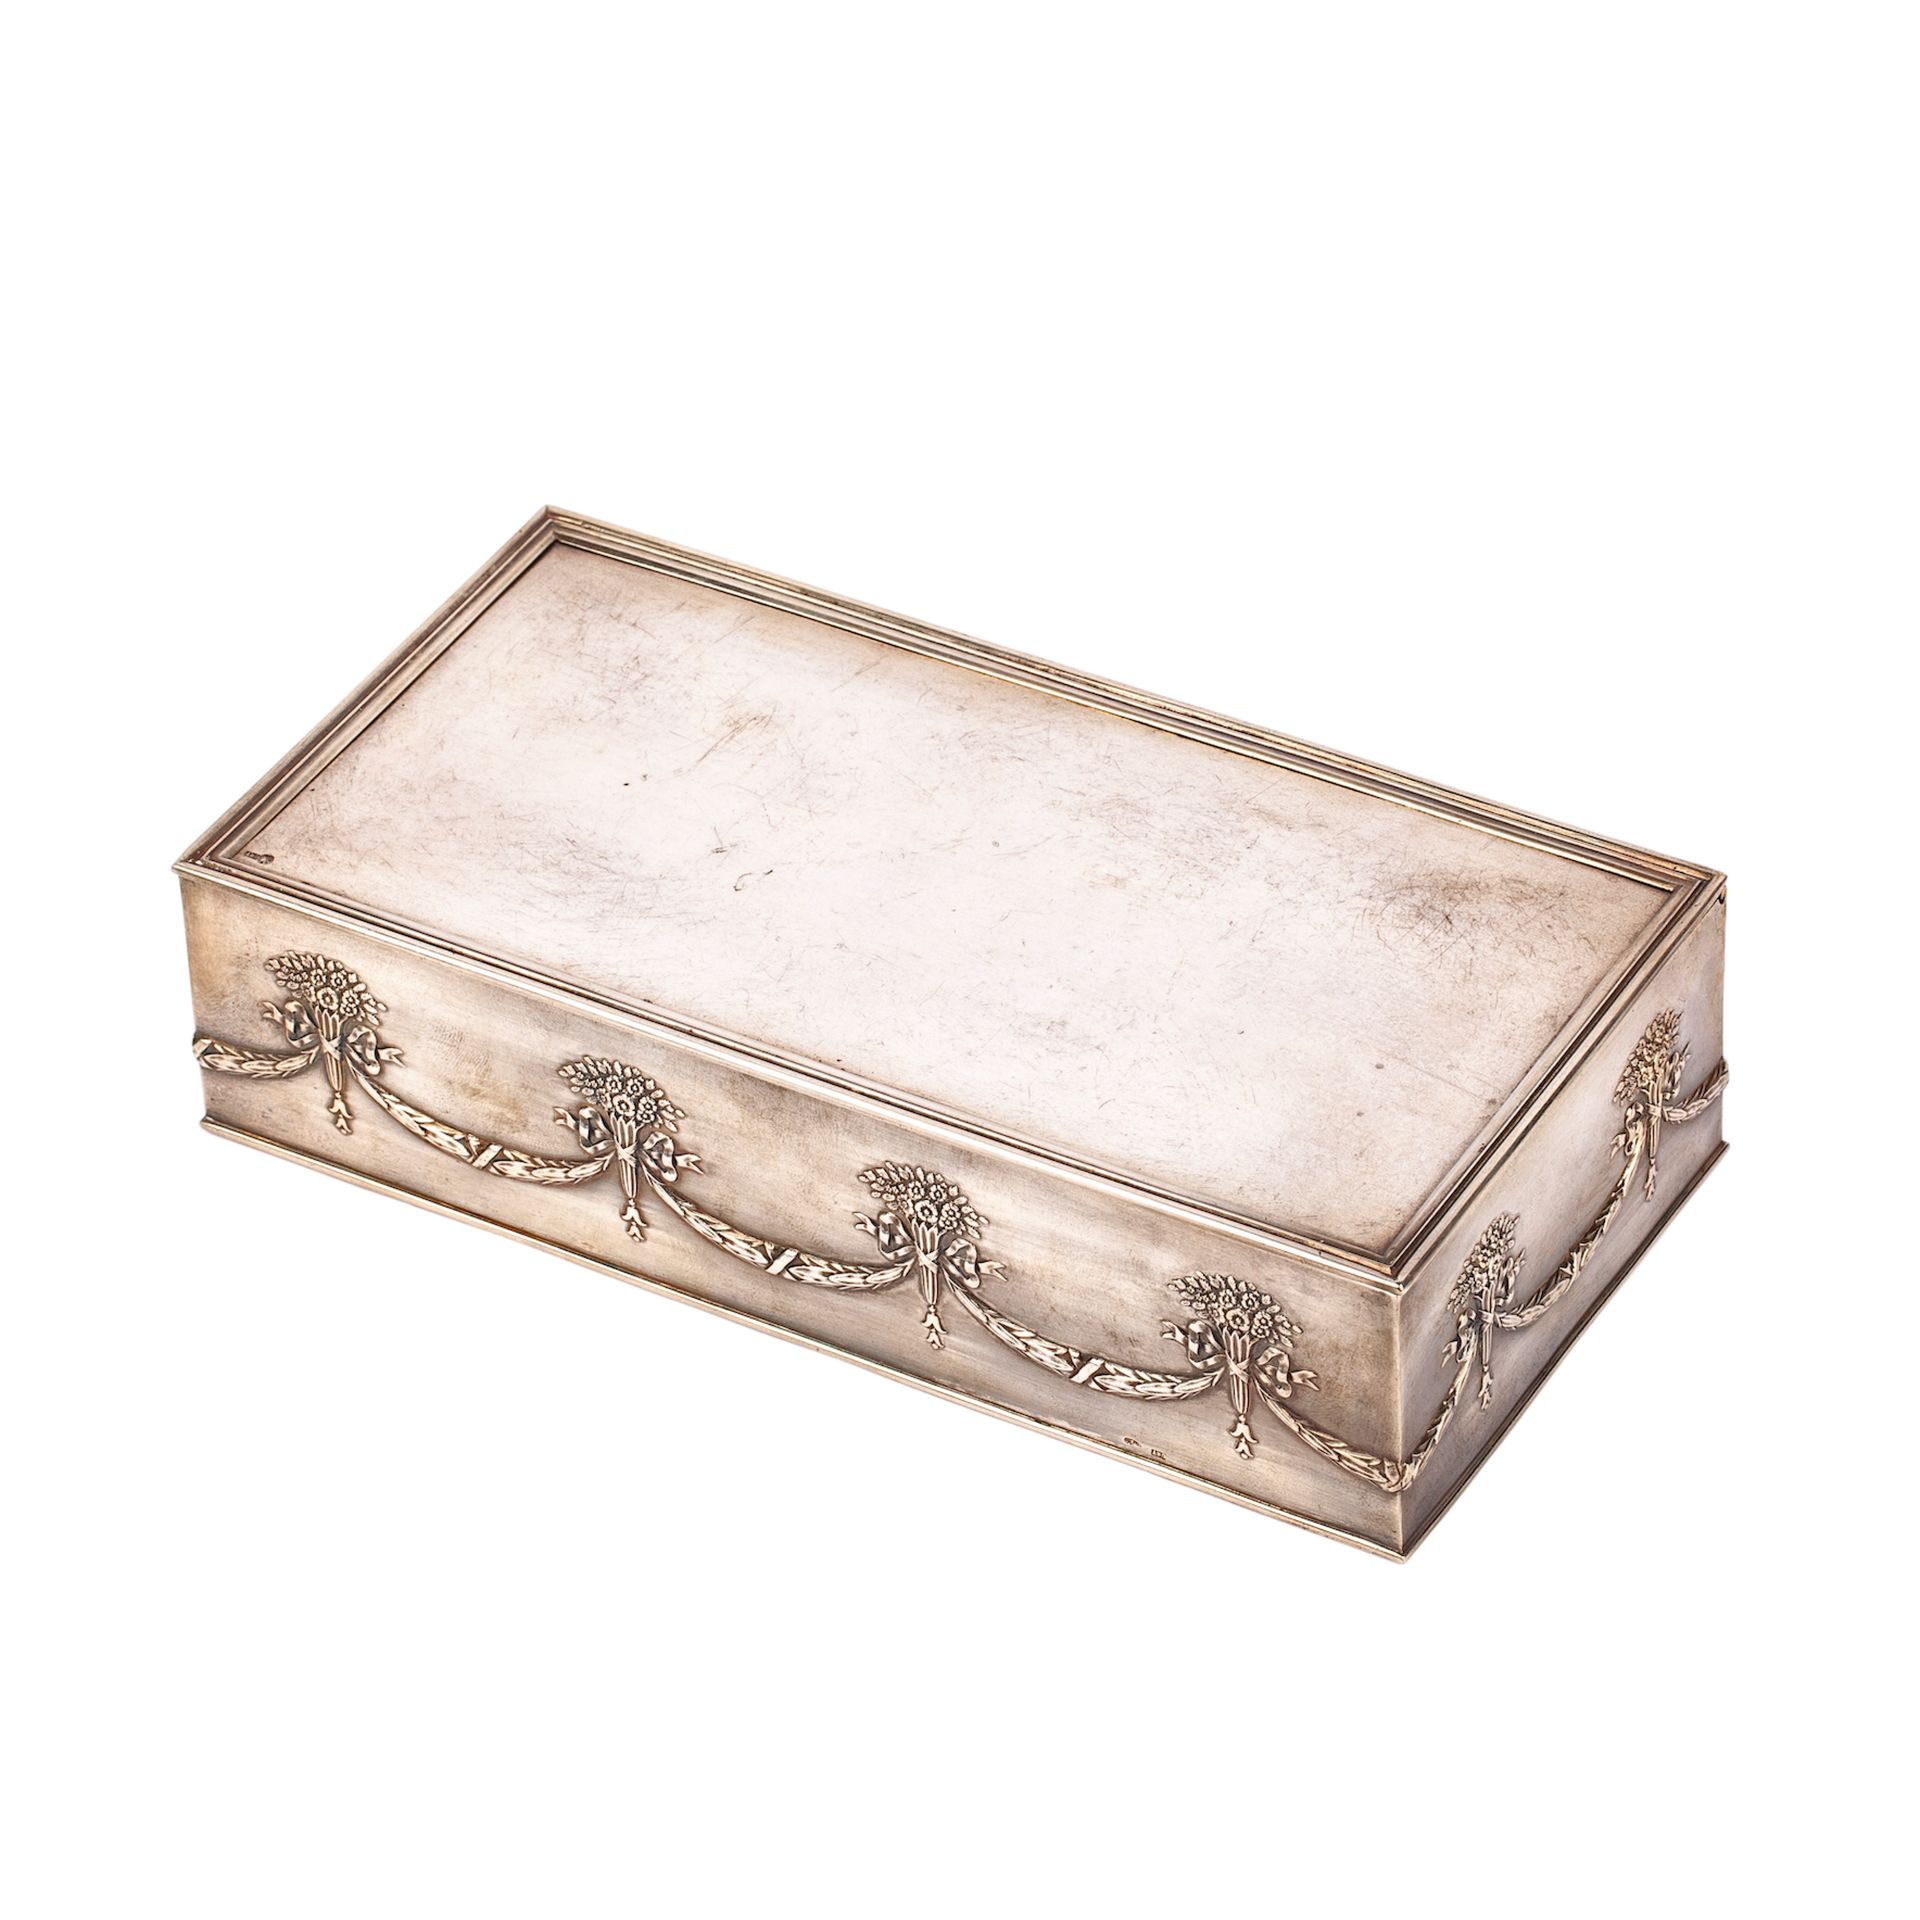 Null 新古典主义风格的雪茄盒。银，压花，镀金，木头。亚历山大-皮斯卡列夫的工作室。莫斯科，1899-1908。尺寸：22.7 x 11.8 x 5.7厘米。&hellip;